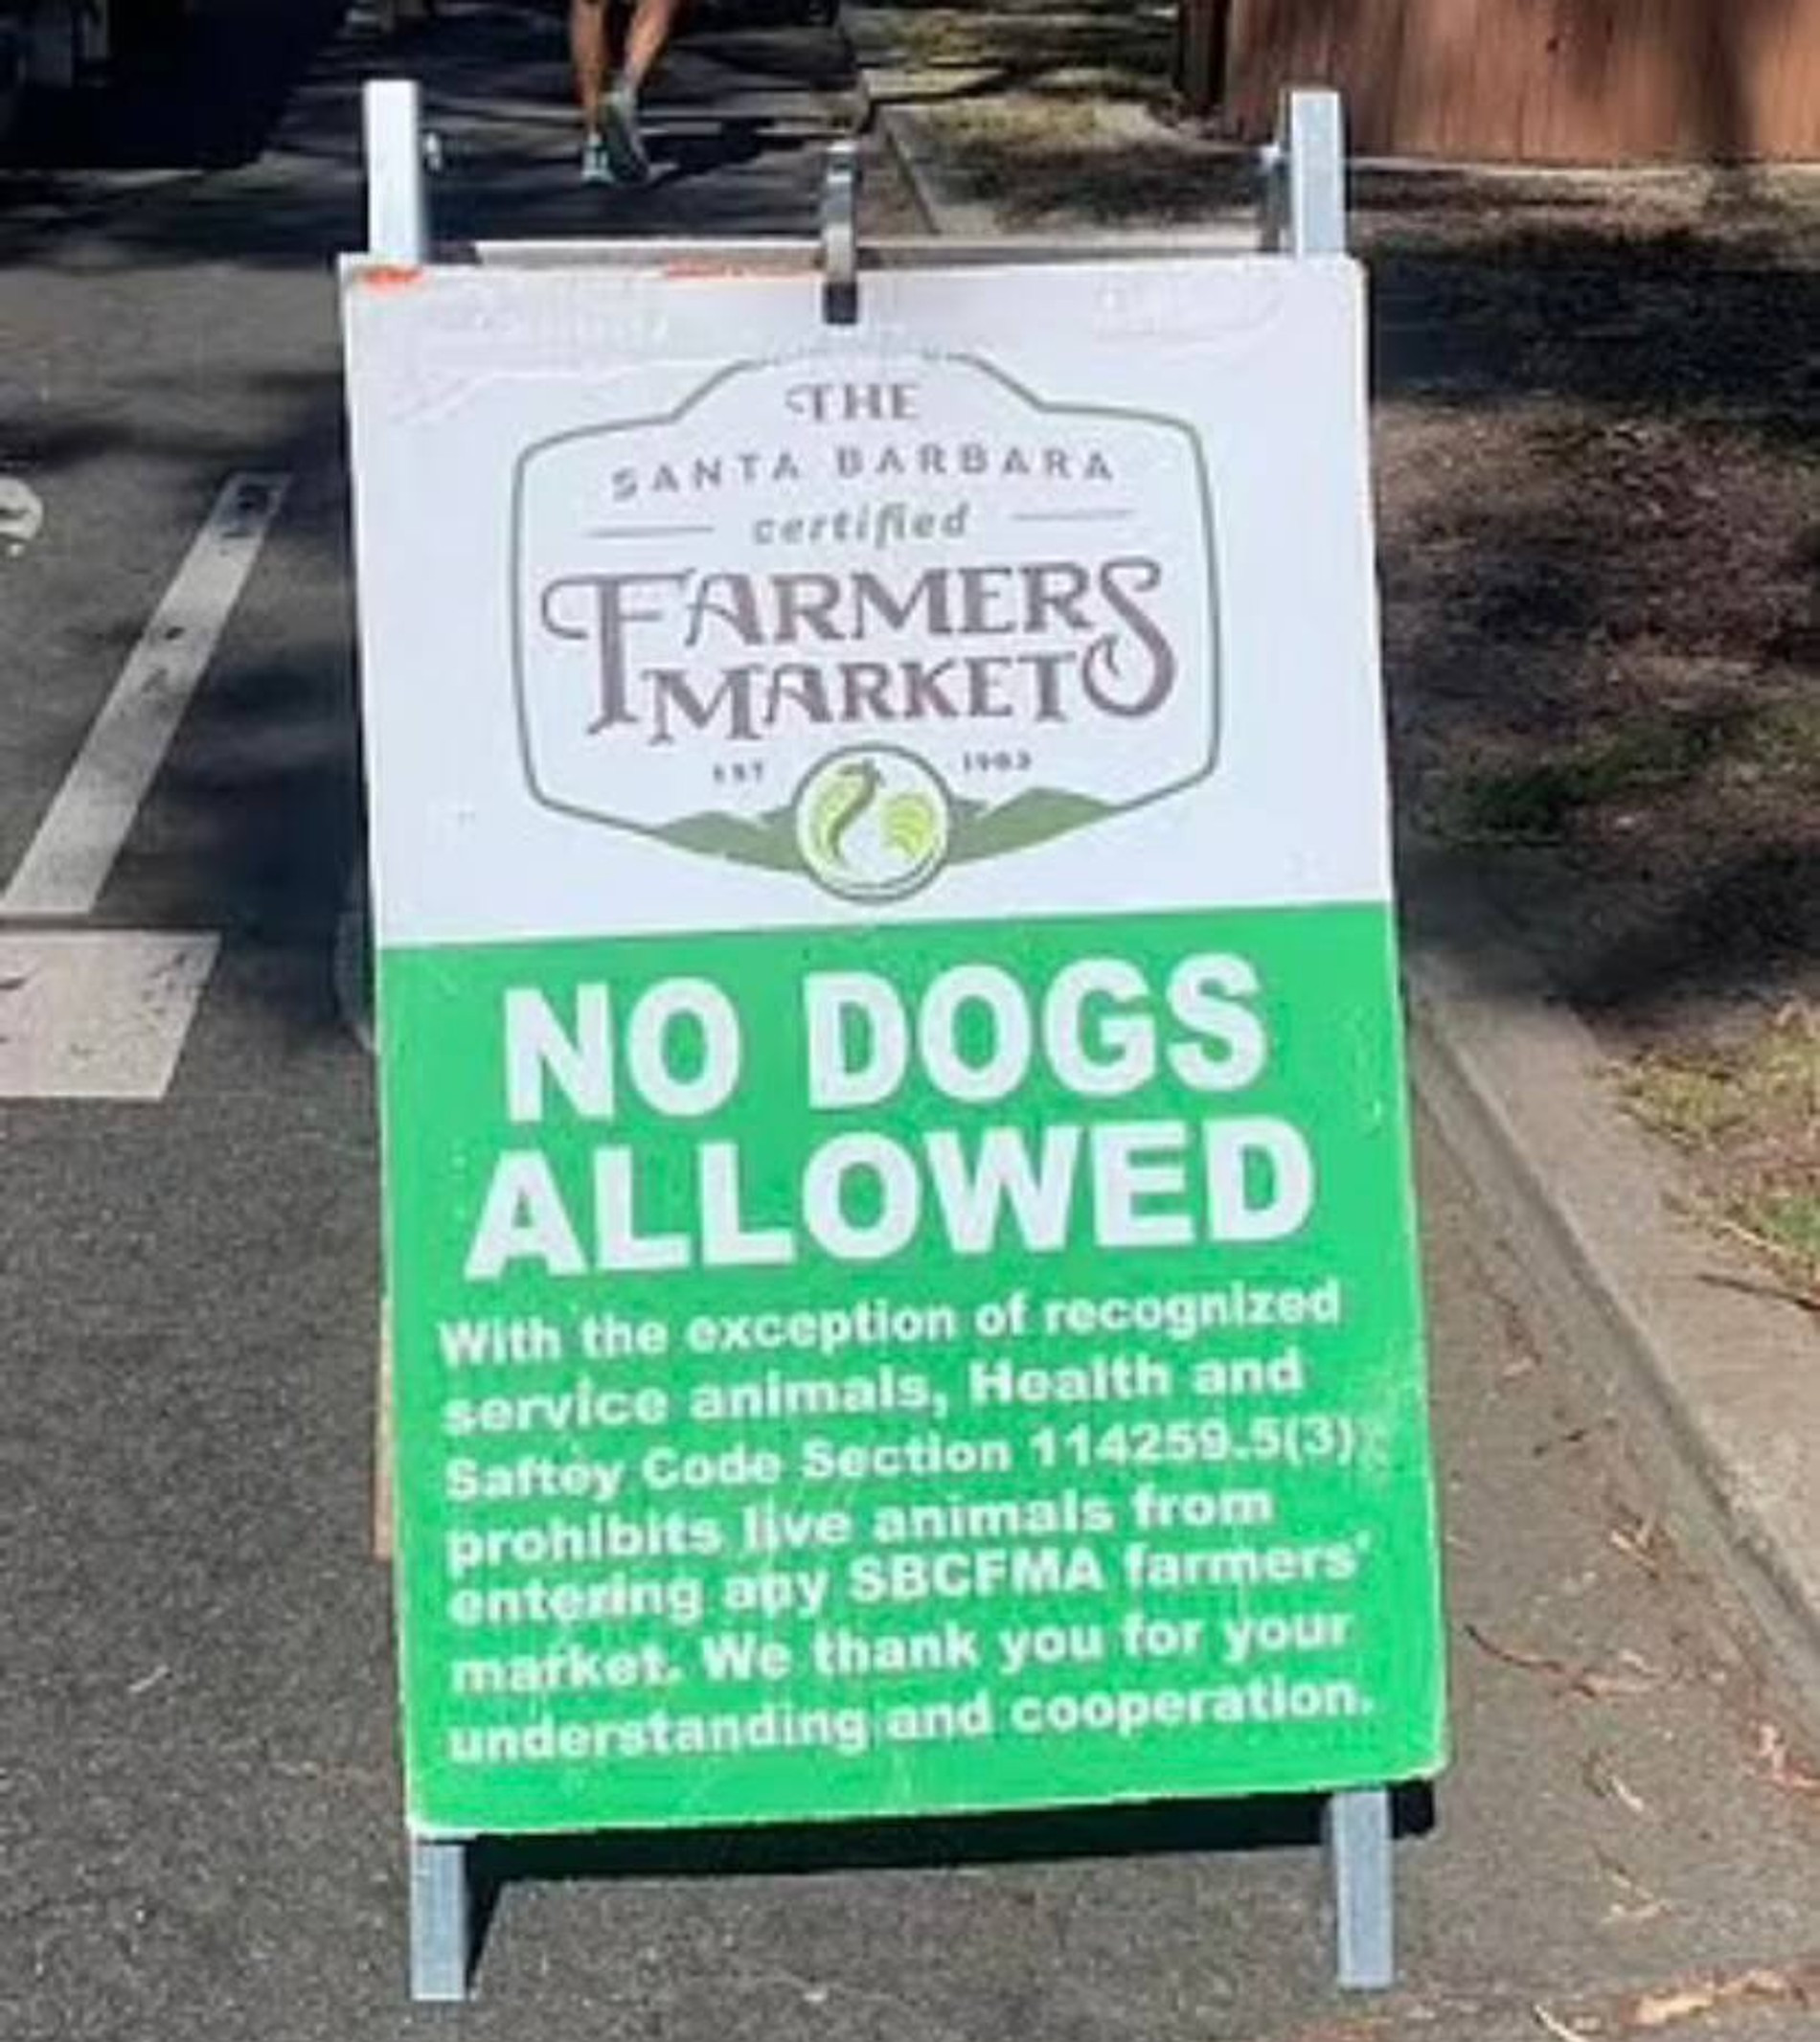 Табличка у входа на рынок, запрещающая вход с собаками за исключением служебных животных. Фото: Daily Mail